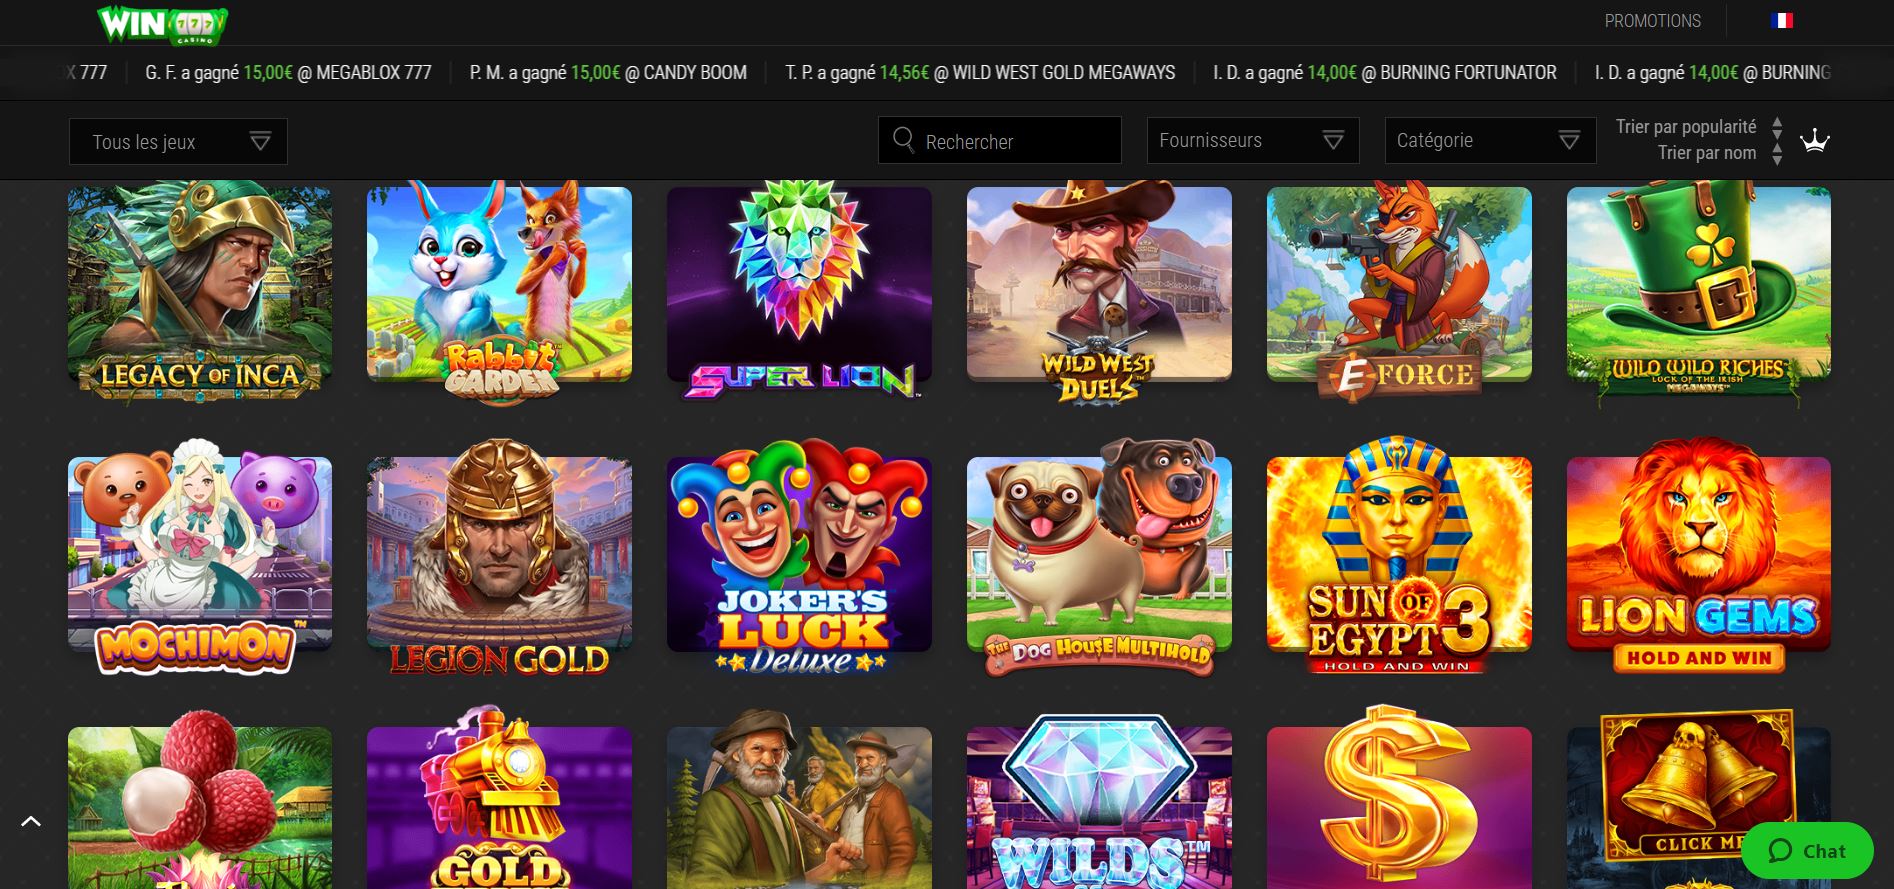 WinOui - Jeux - Casino en ligne argent réel